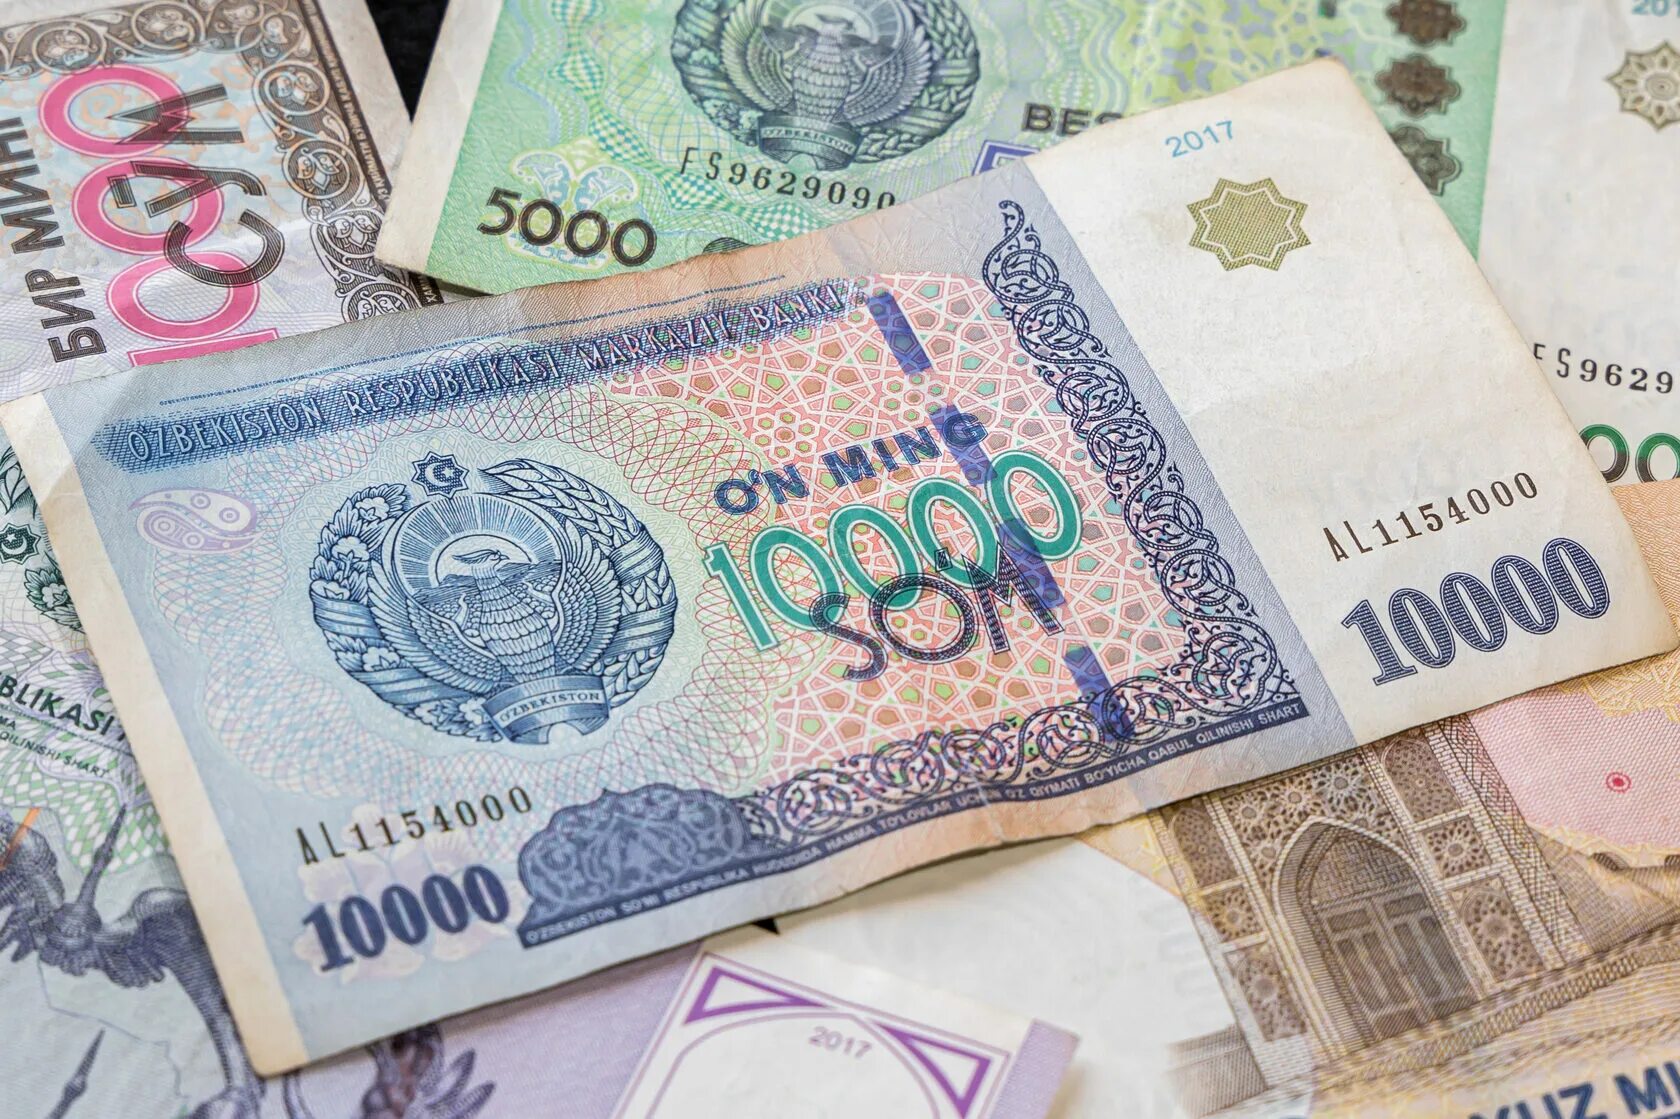 2000 Узбекских сум. Узбекистан валюта 100$. Валюта Узбекистана сум. Узбекские купюры.